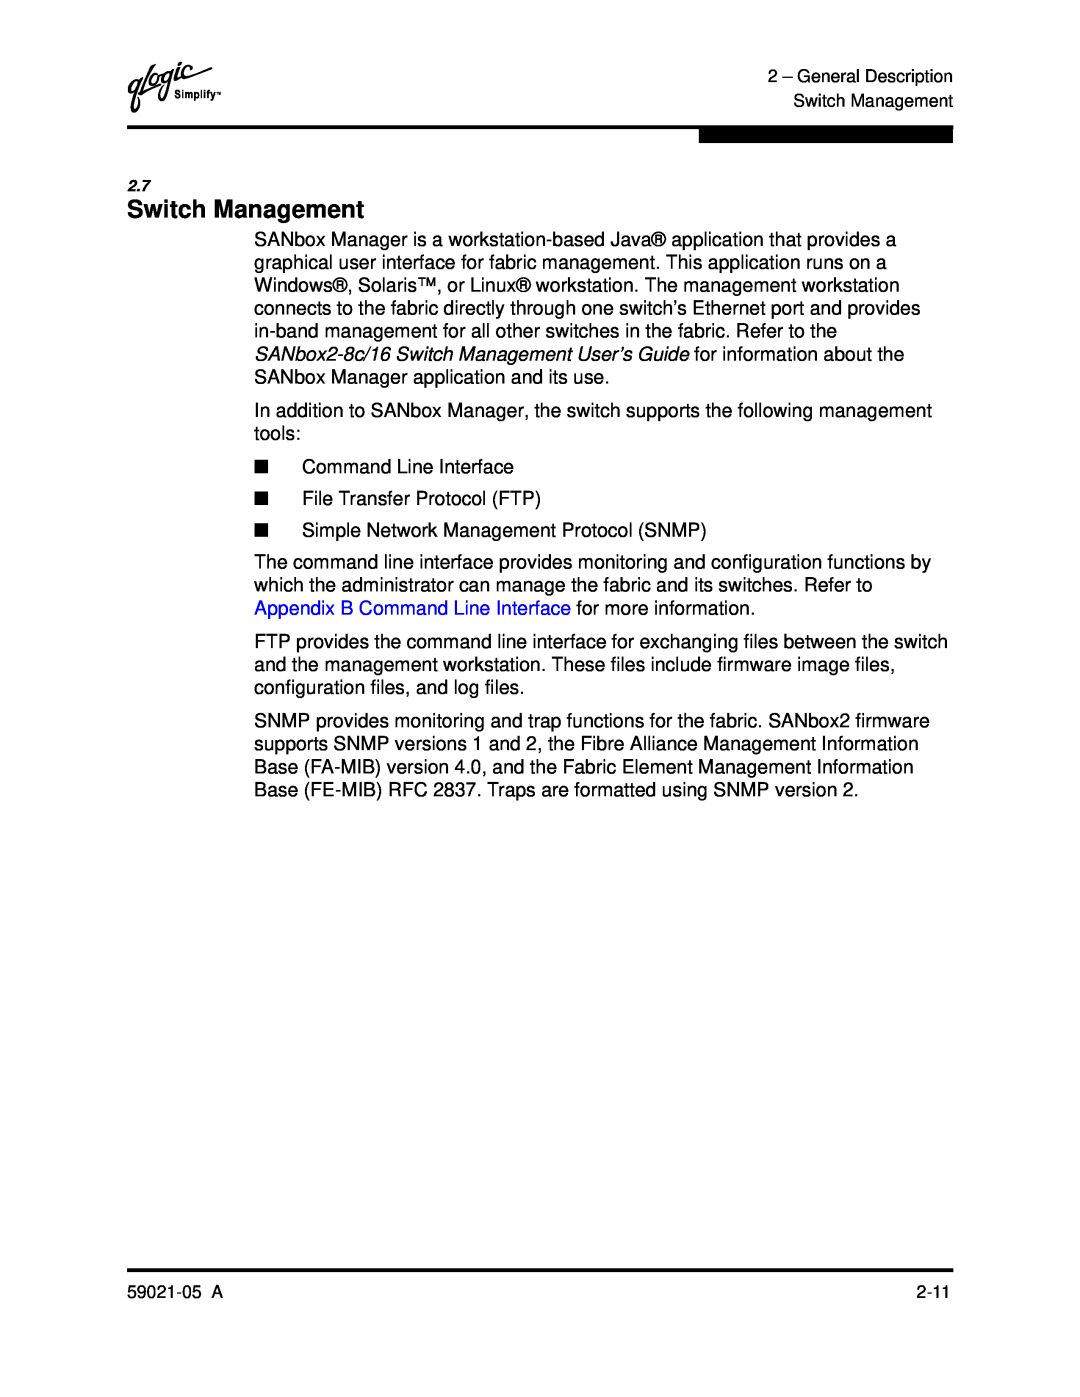 Q-Logic 59021-05 manual Switch Management 